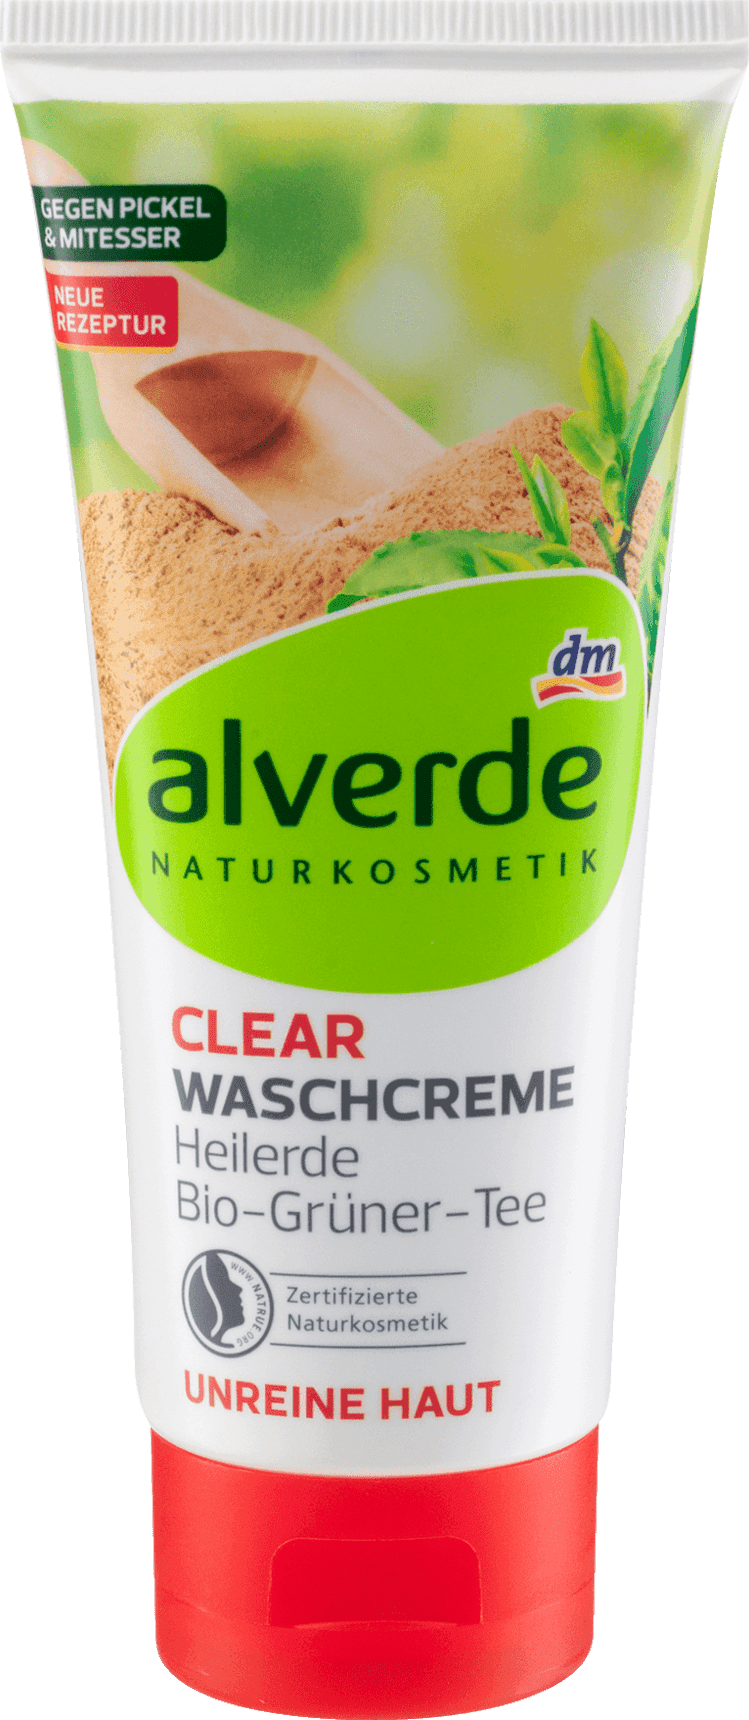 Waschcreme Clear Heilerde